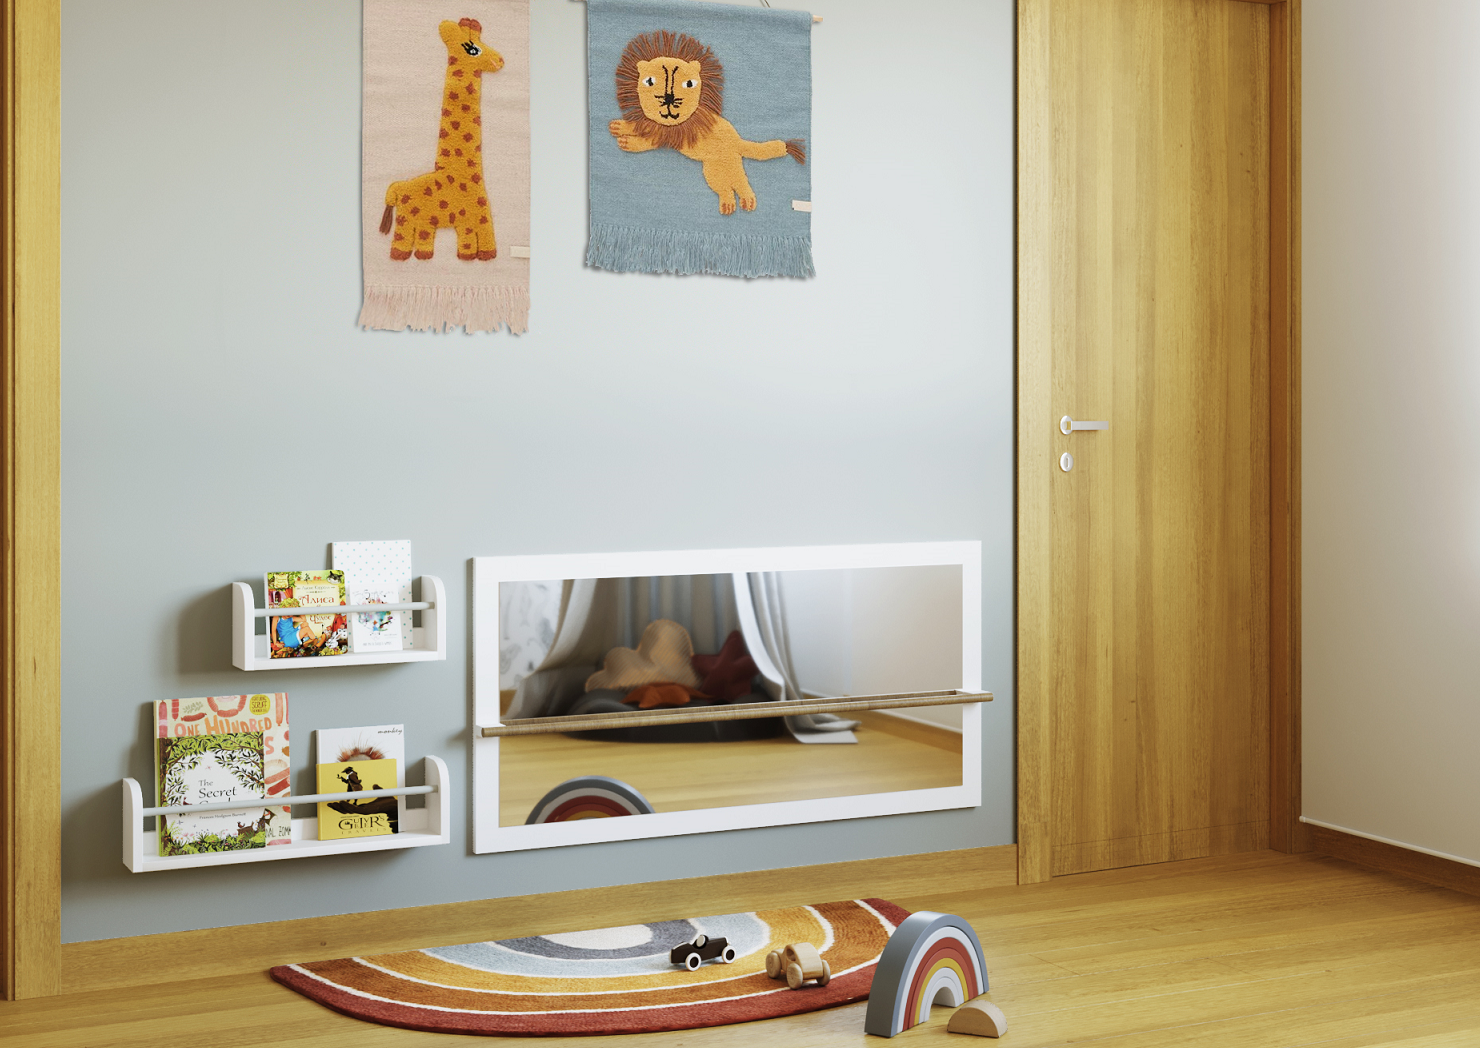 La habitación de Inés: cómo transformar un cuarto de invitados en una habitación infantil de ensueño